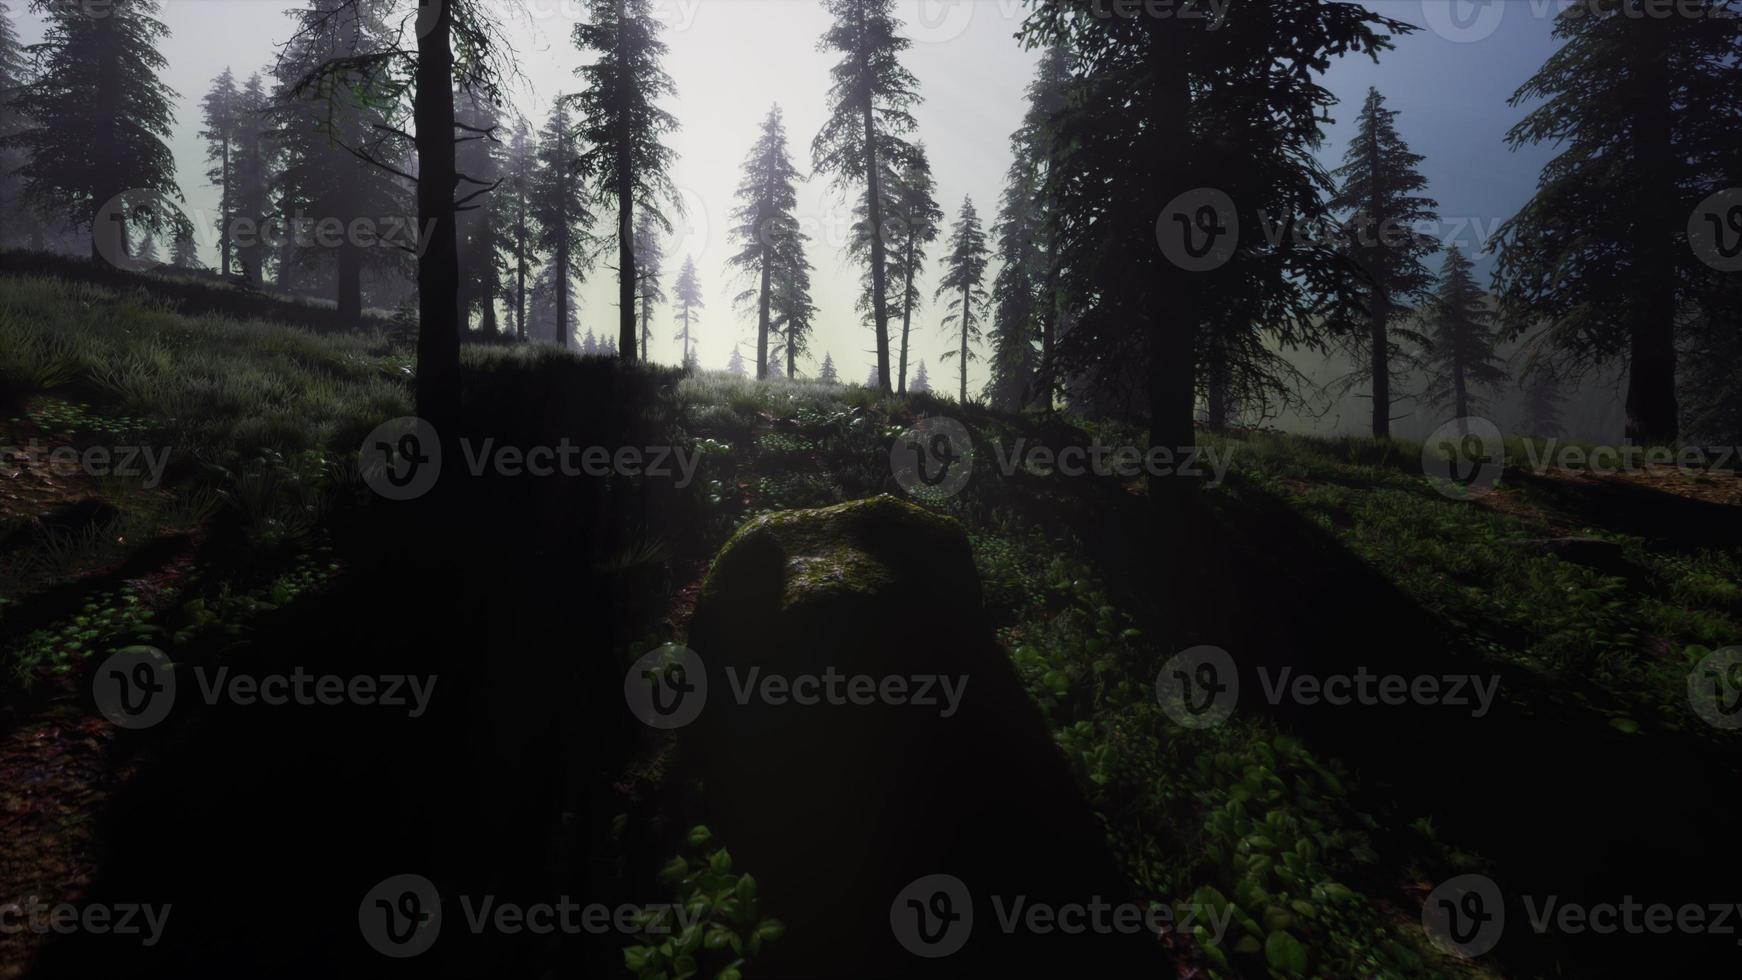 8k misty carpathian spruce forest at night photo